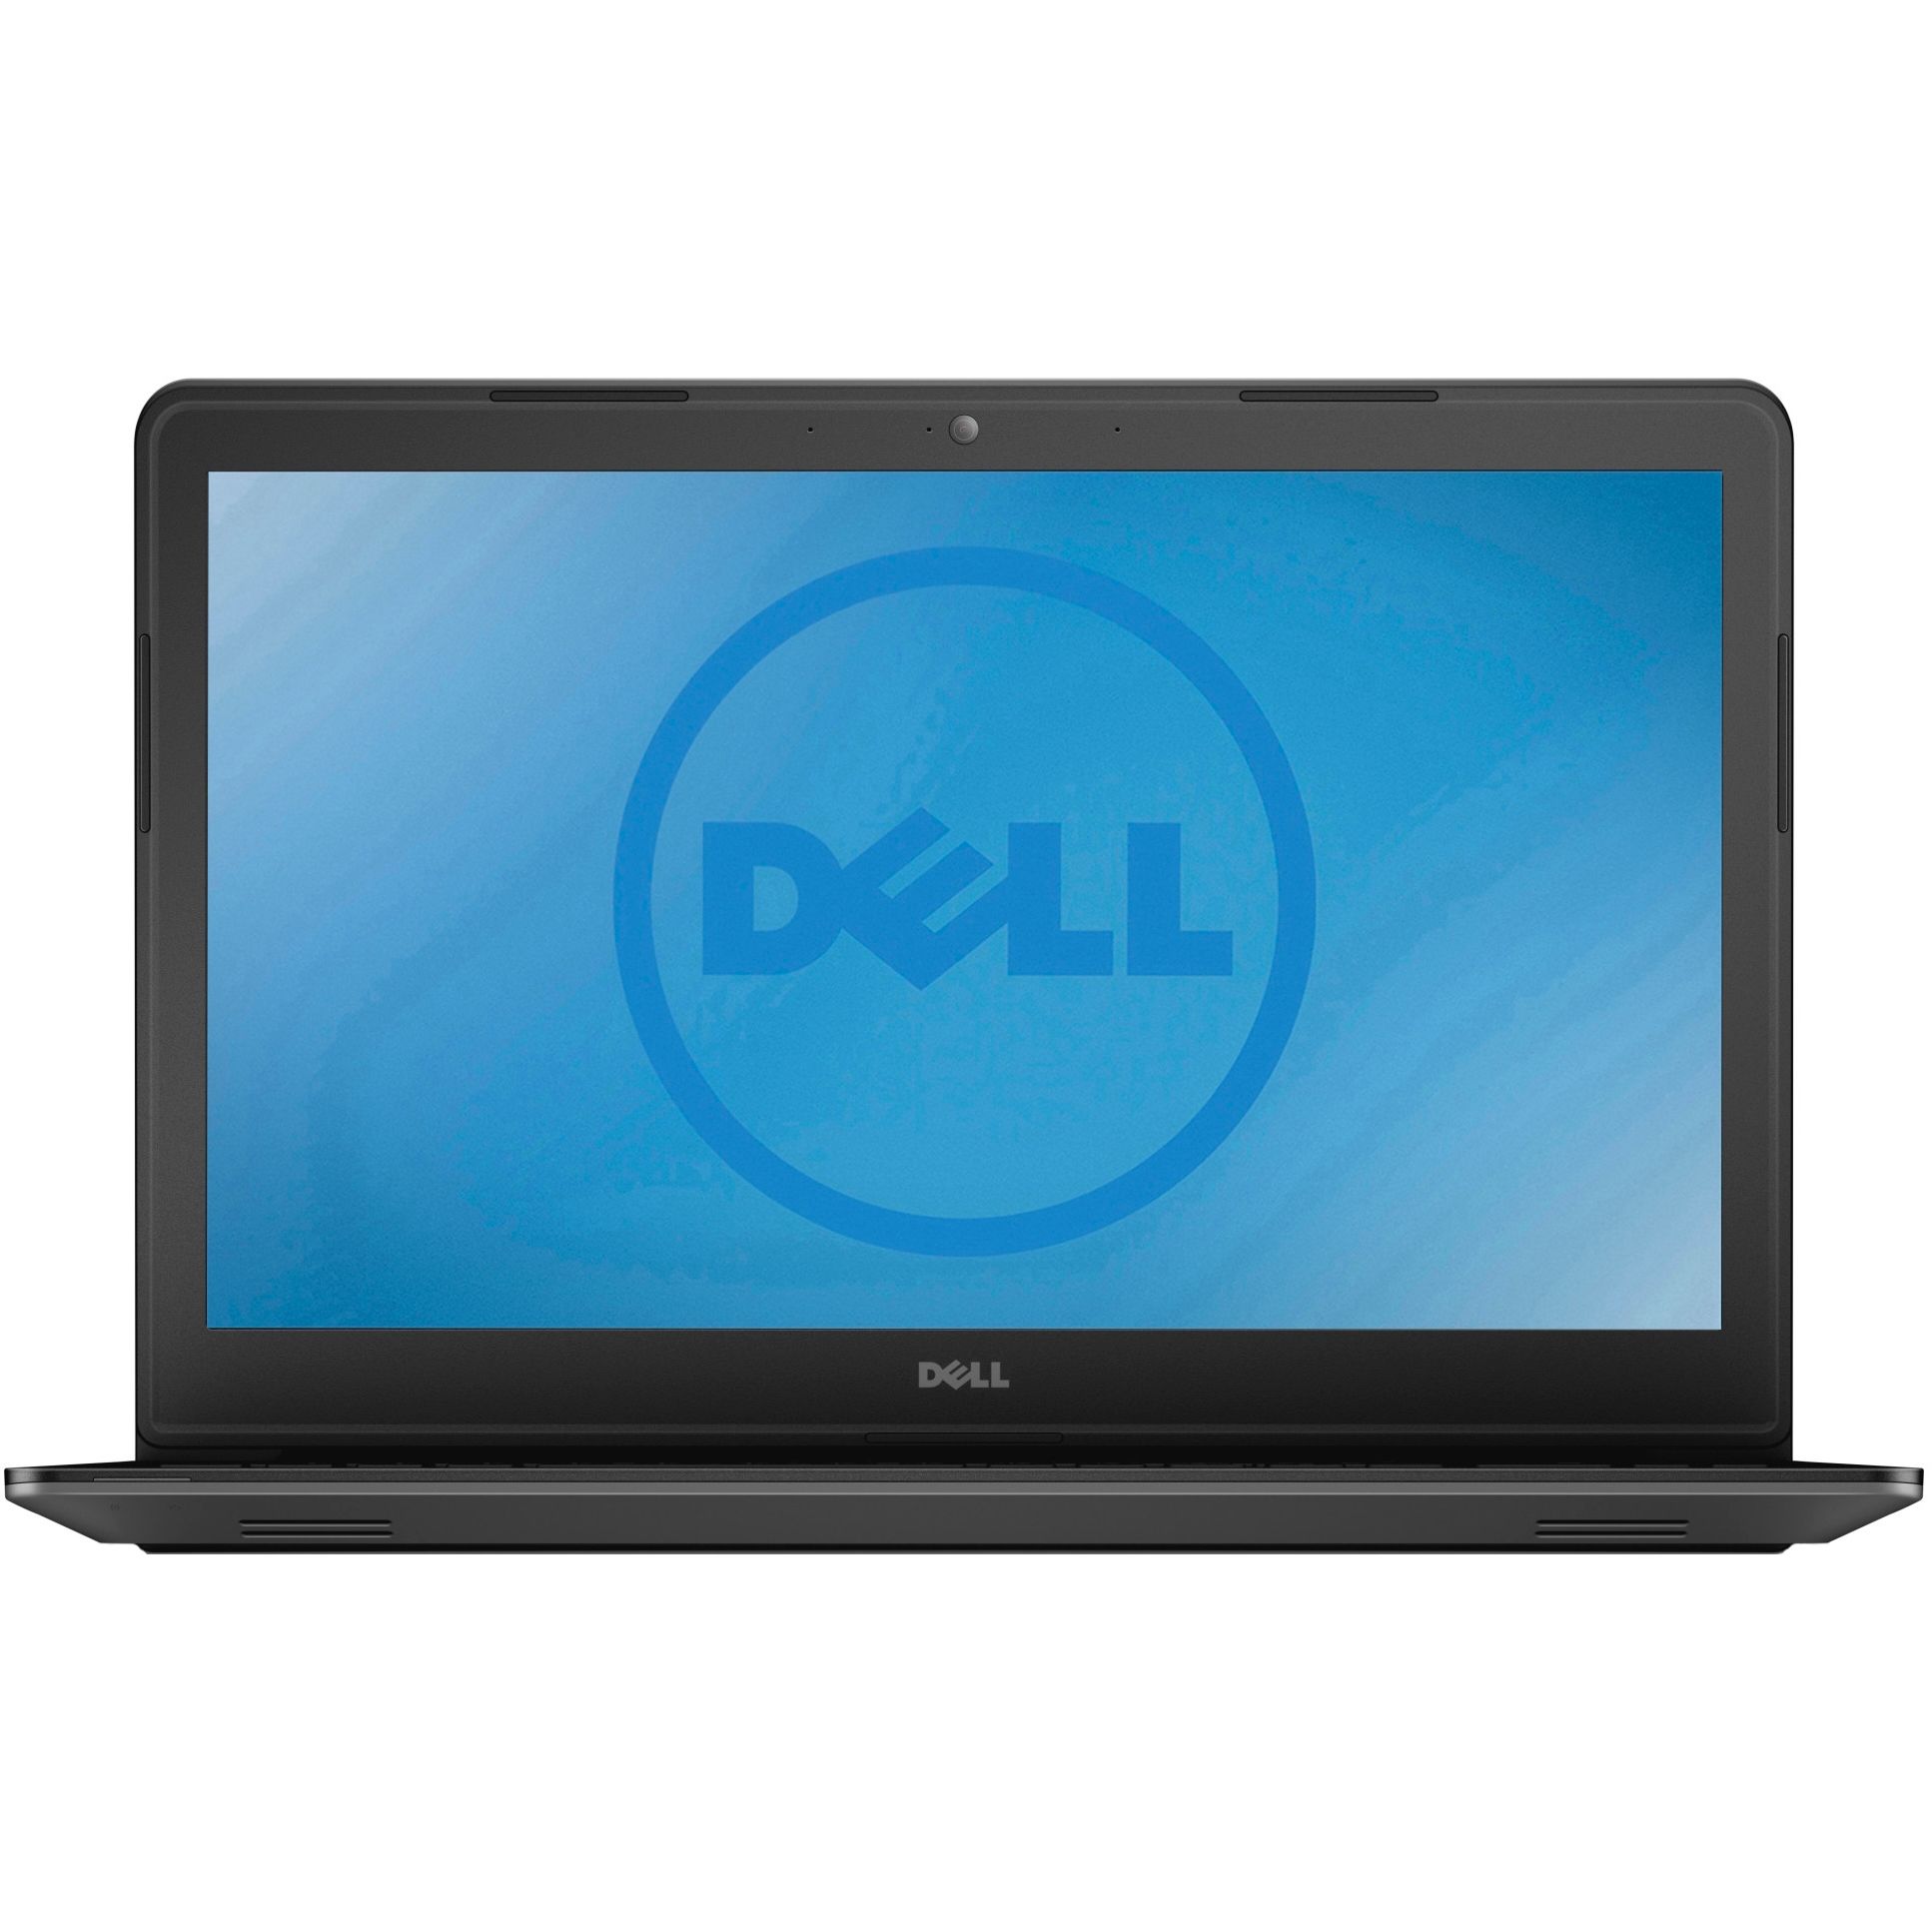 Laptop DELL Latitude 3550, Intel Core i5-5200U 2.20GHz, 4GB DDR3, 500GB SATA, 15.6 Inch, Tastatura Numerica, Webcam